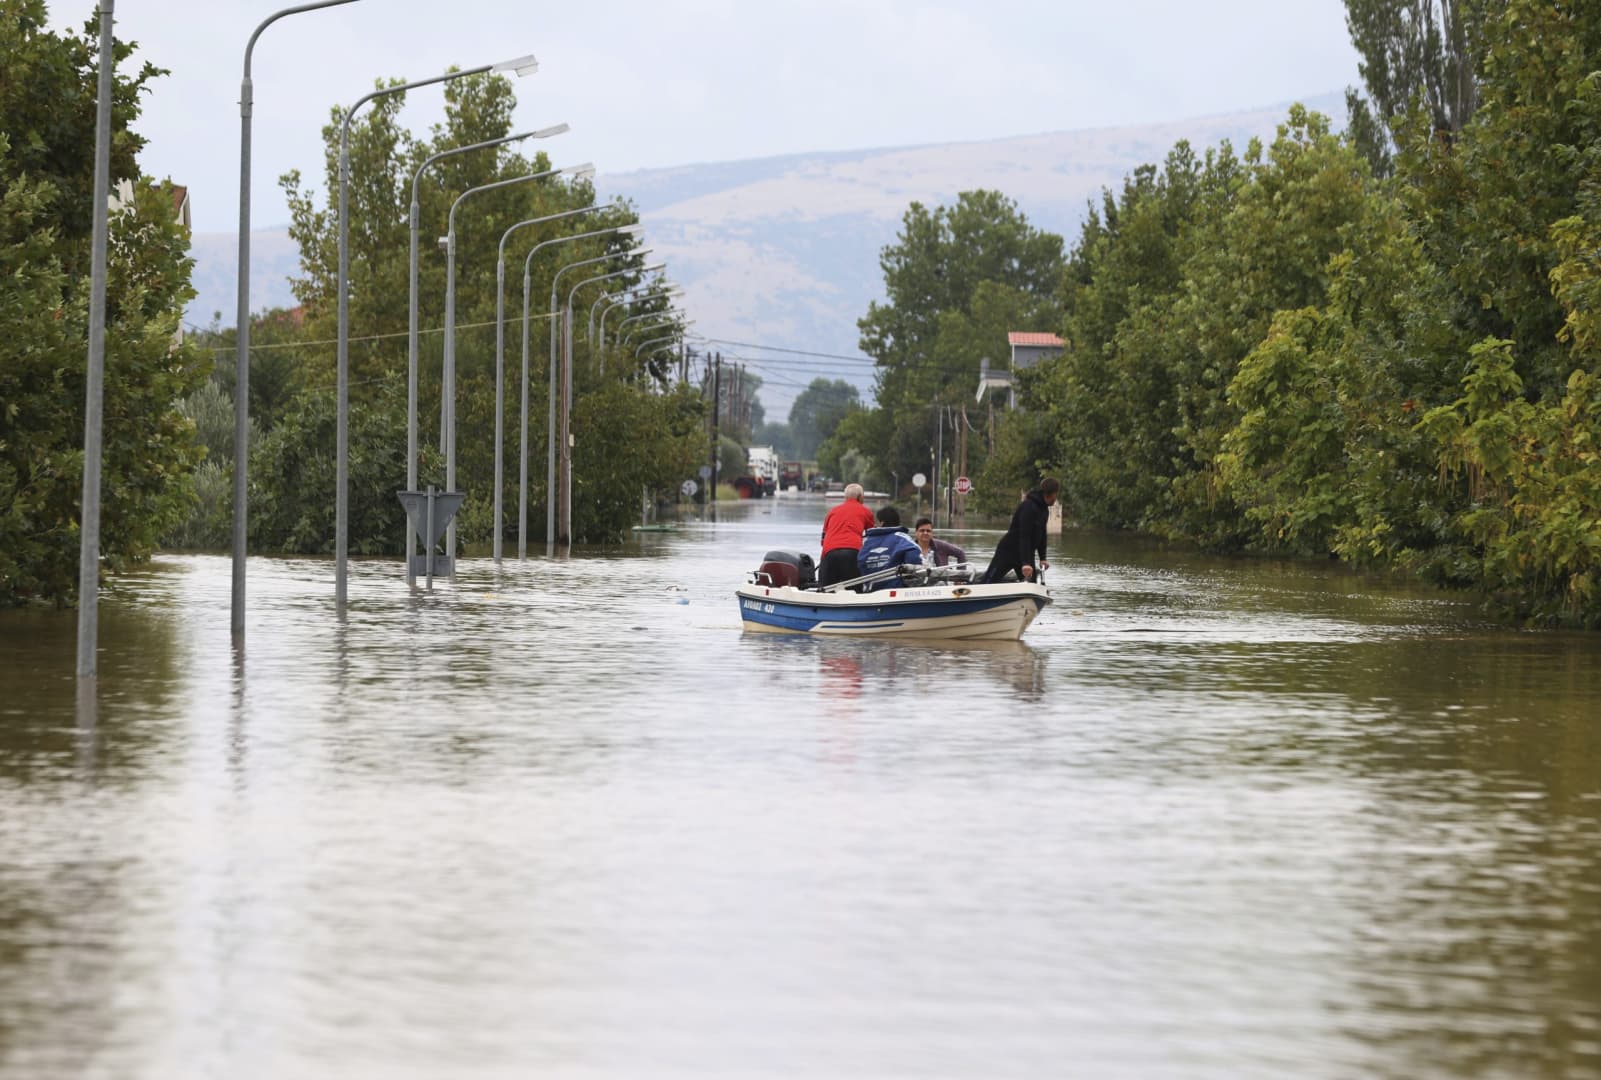 Emelkedett a görögországi árvizek halálos áldozatainak száma